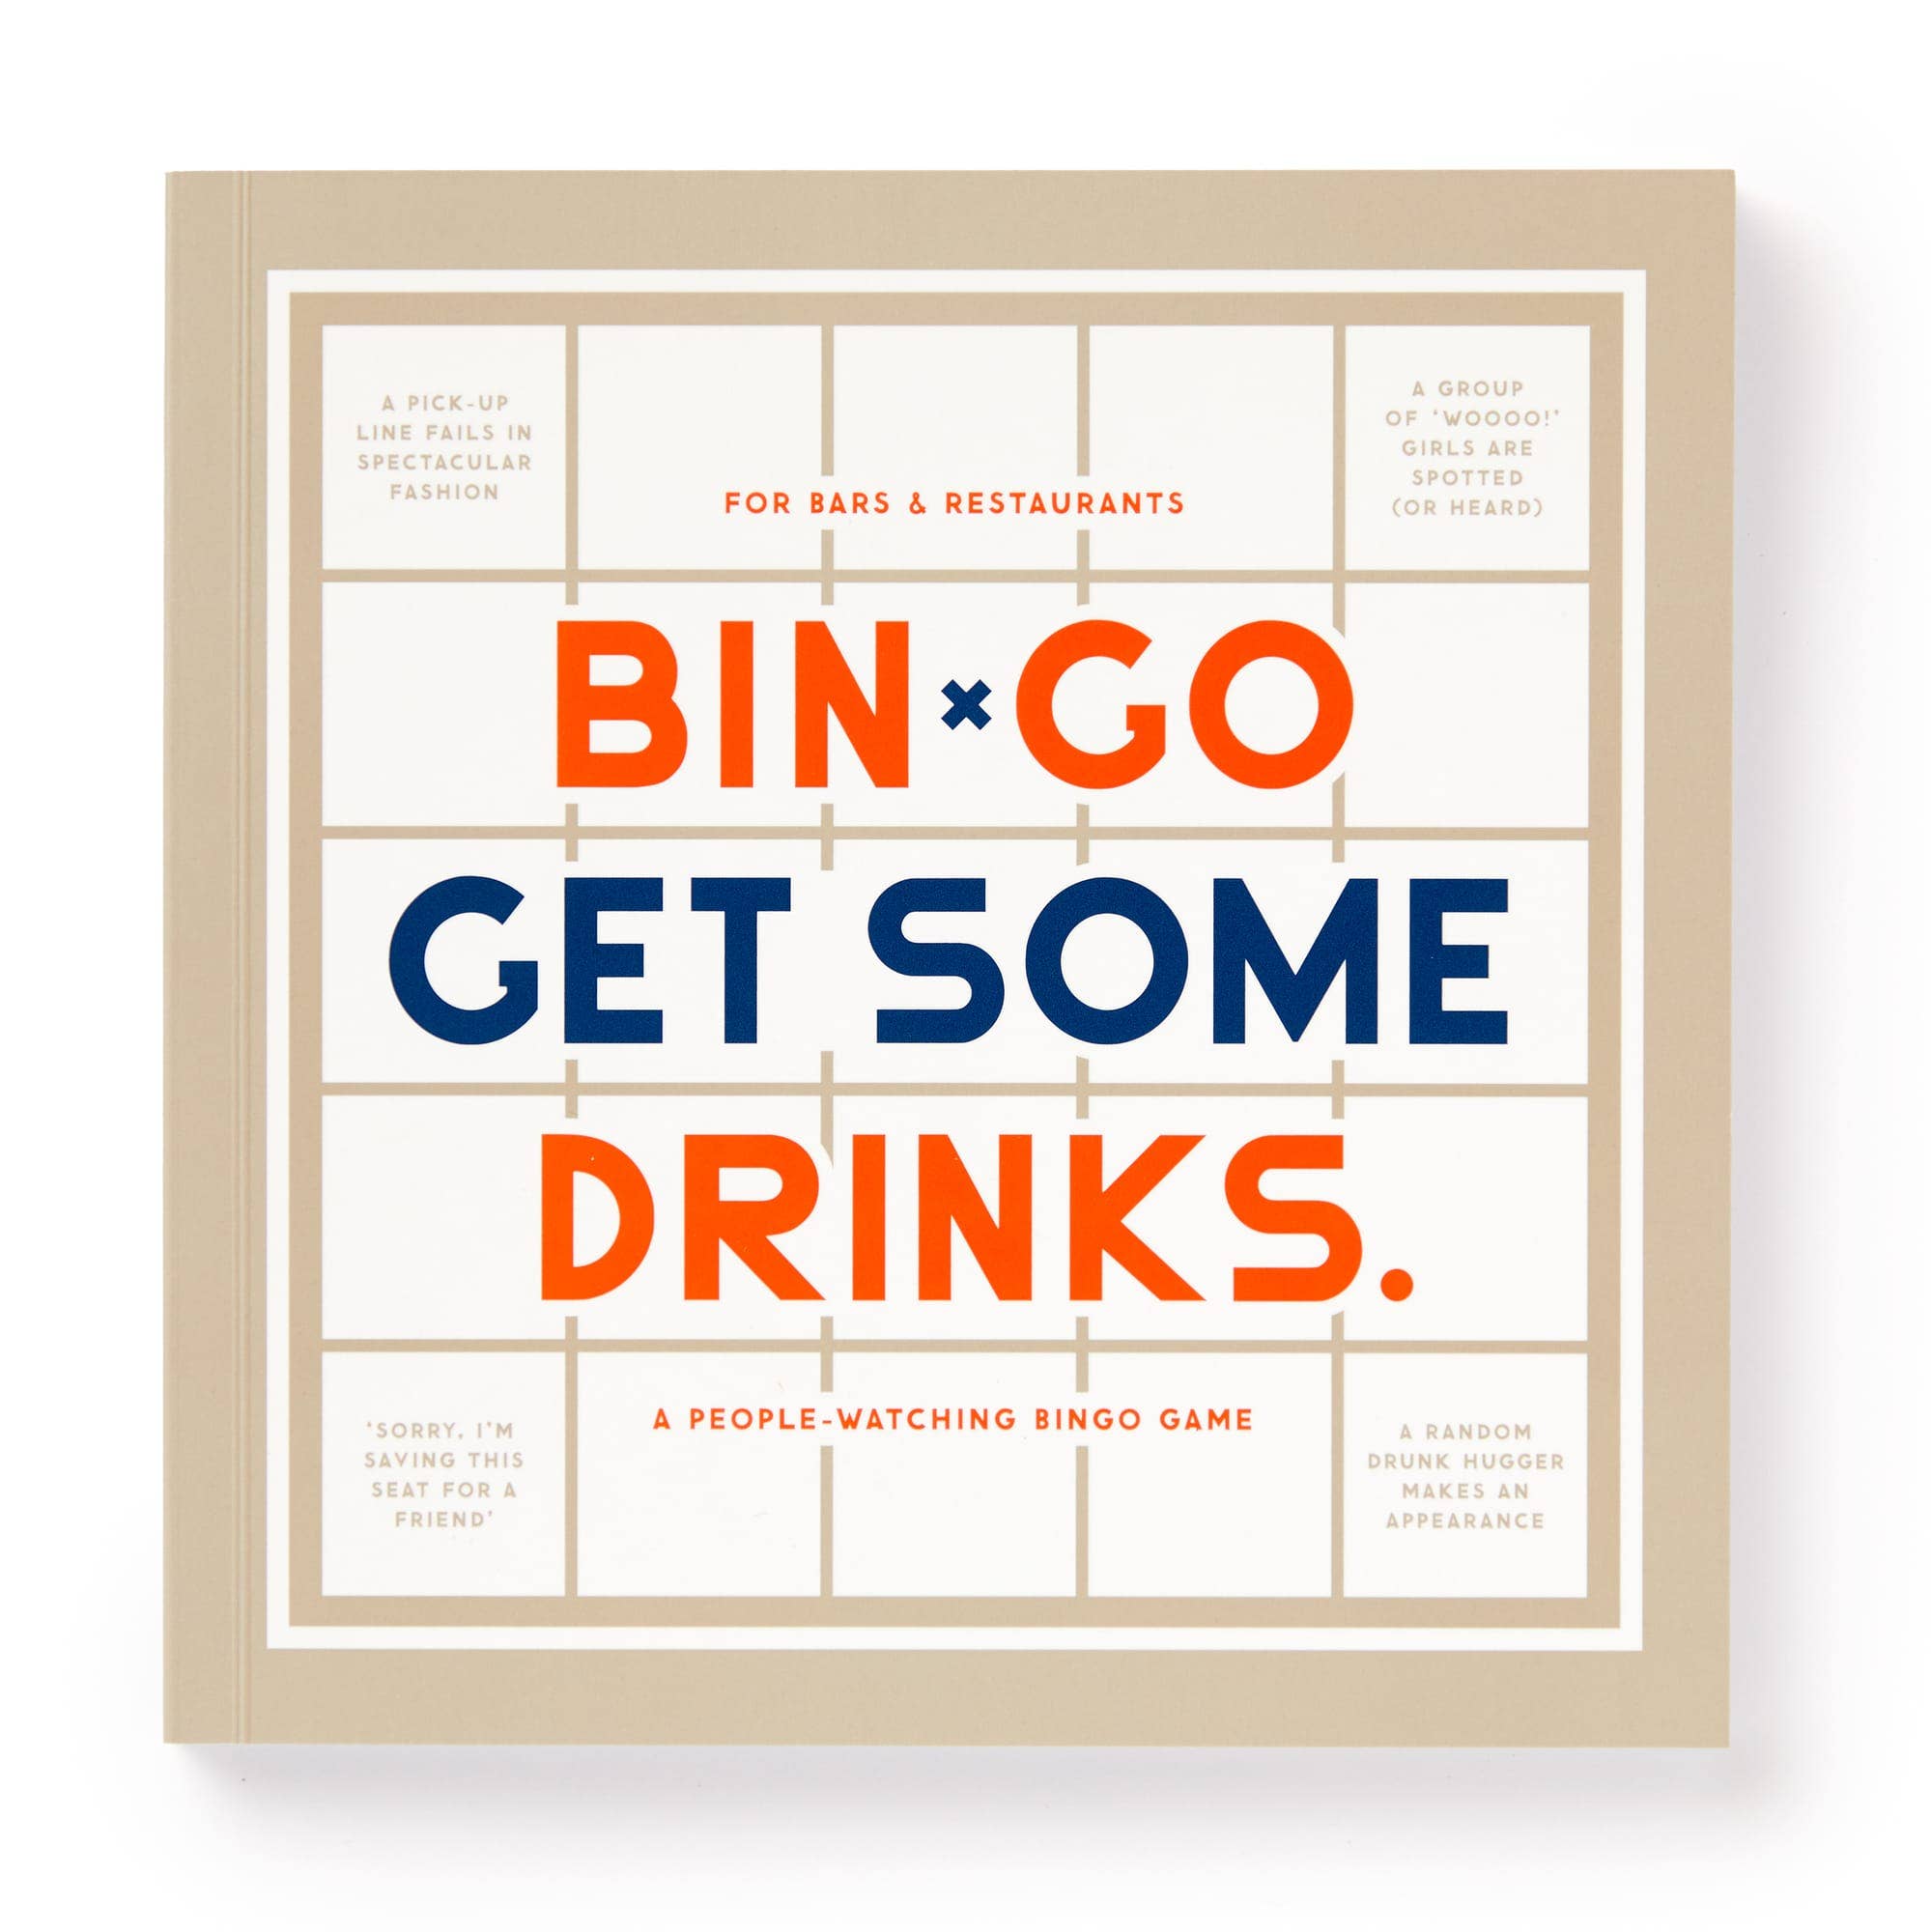 Brass Monkey - Bin-go Get A Few Drinks Bingo Book